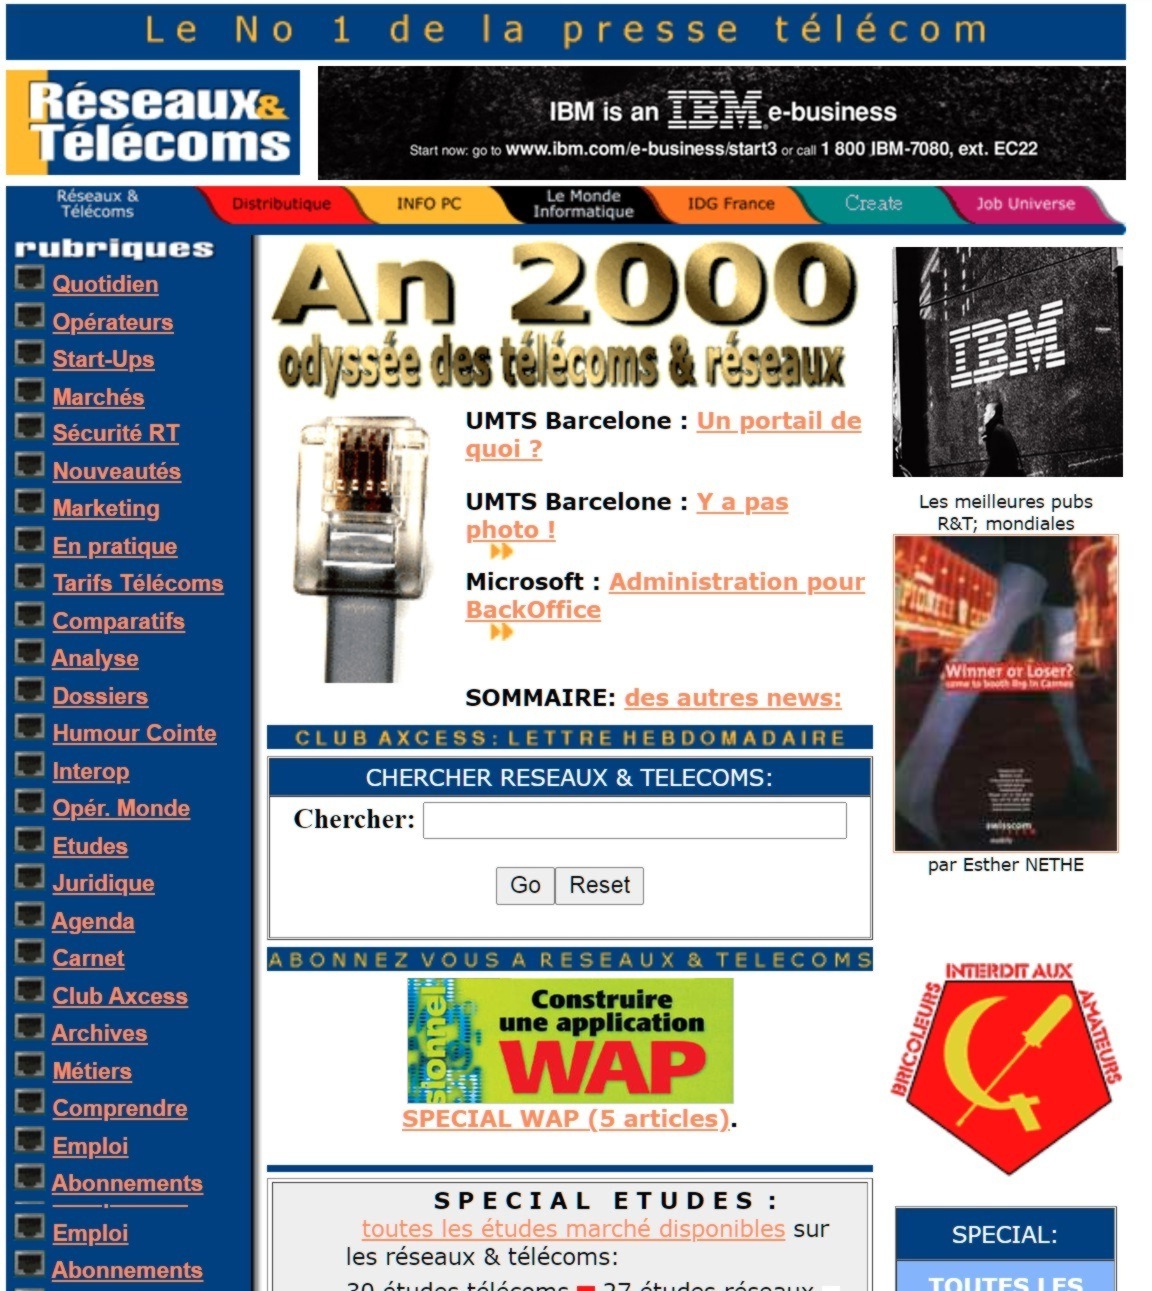 reseaux et telecoms IDG france 1999 - 2000 - 2001